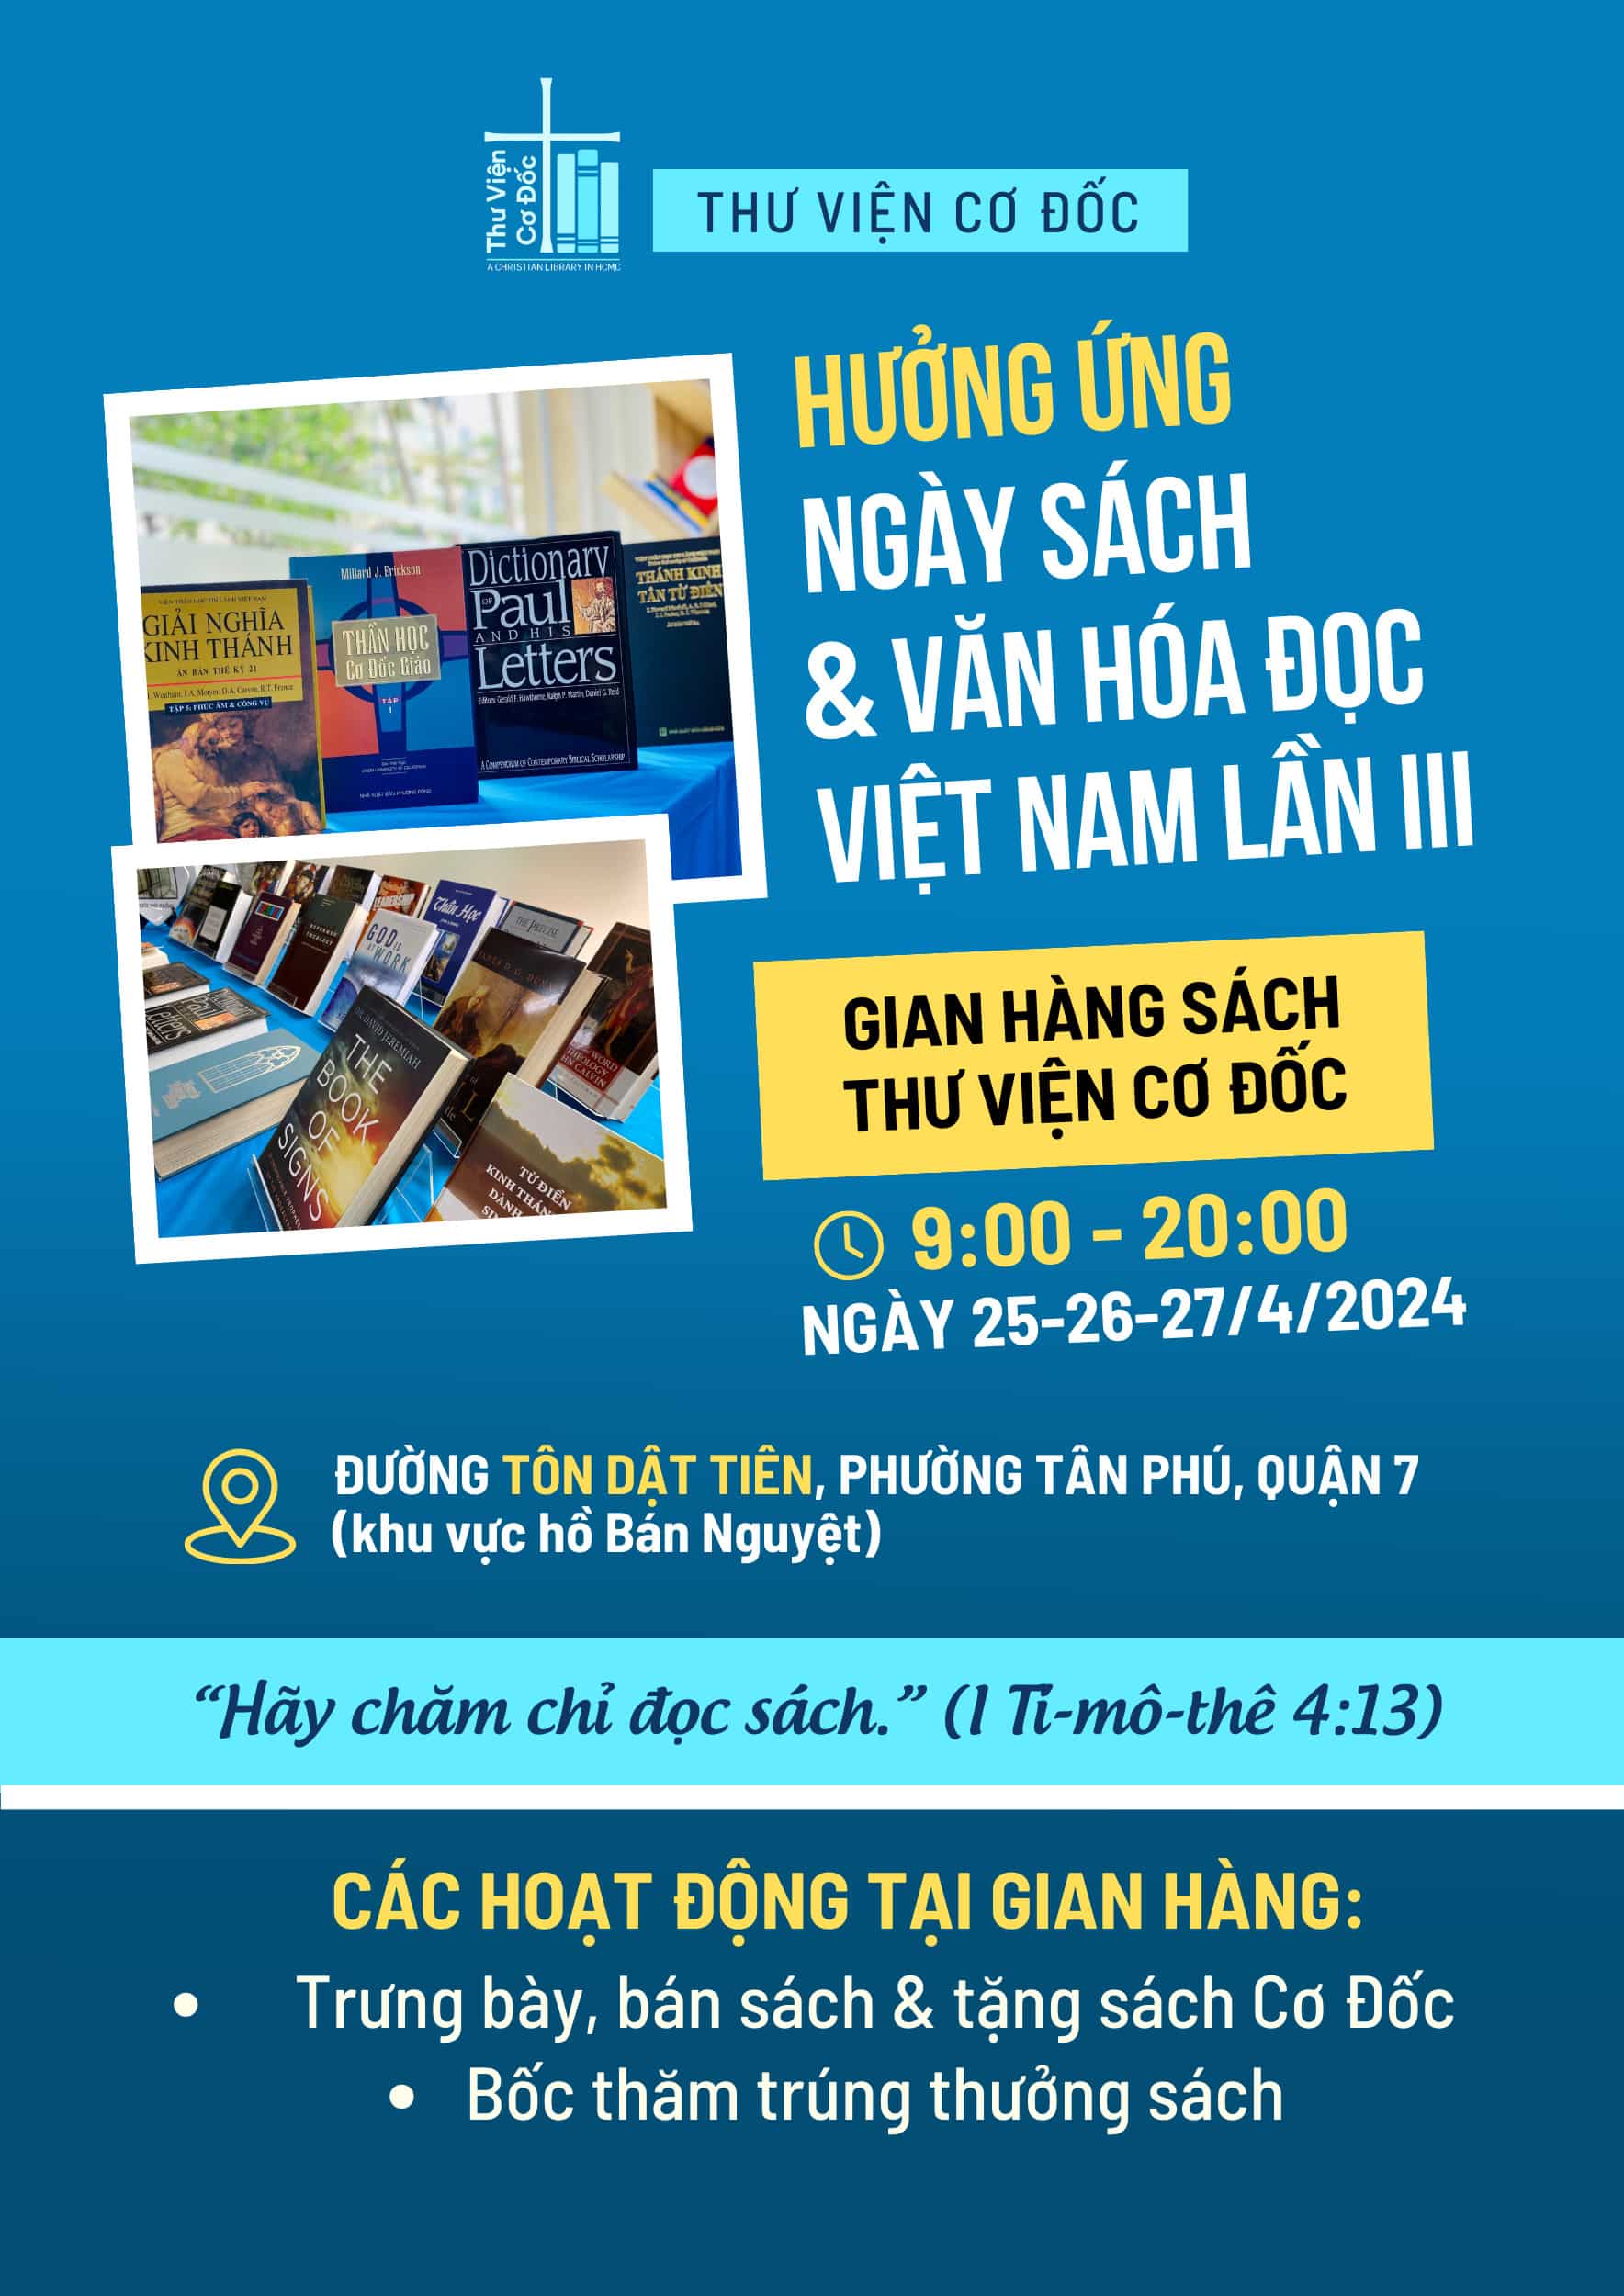 Thư Viện Cơ Đốc hưởng ứng Ngày Sách và Văn hóa đọc Việt Nam lần 3 - Năm 2024